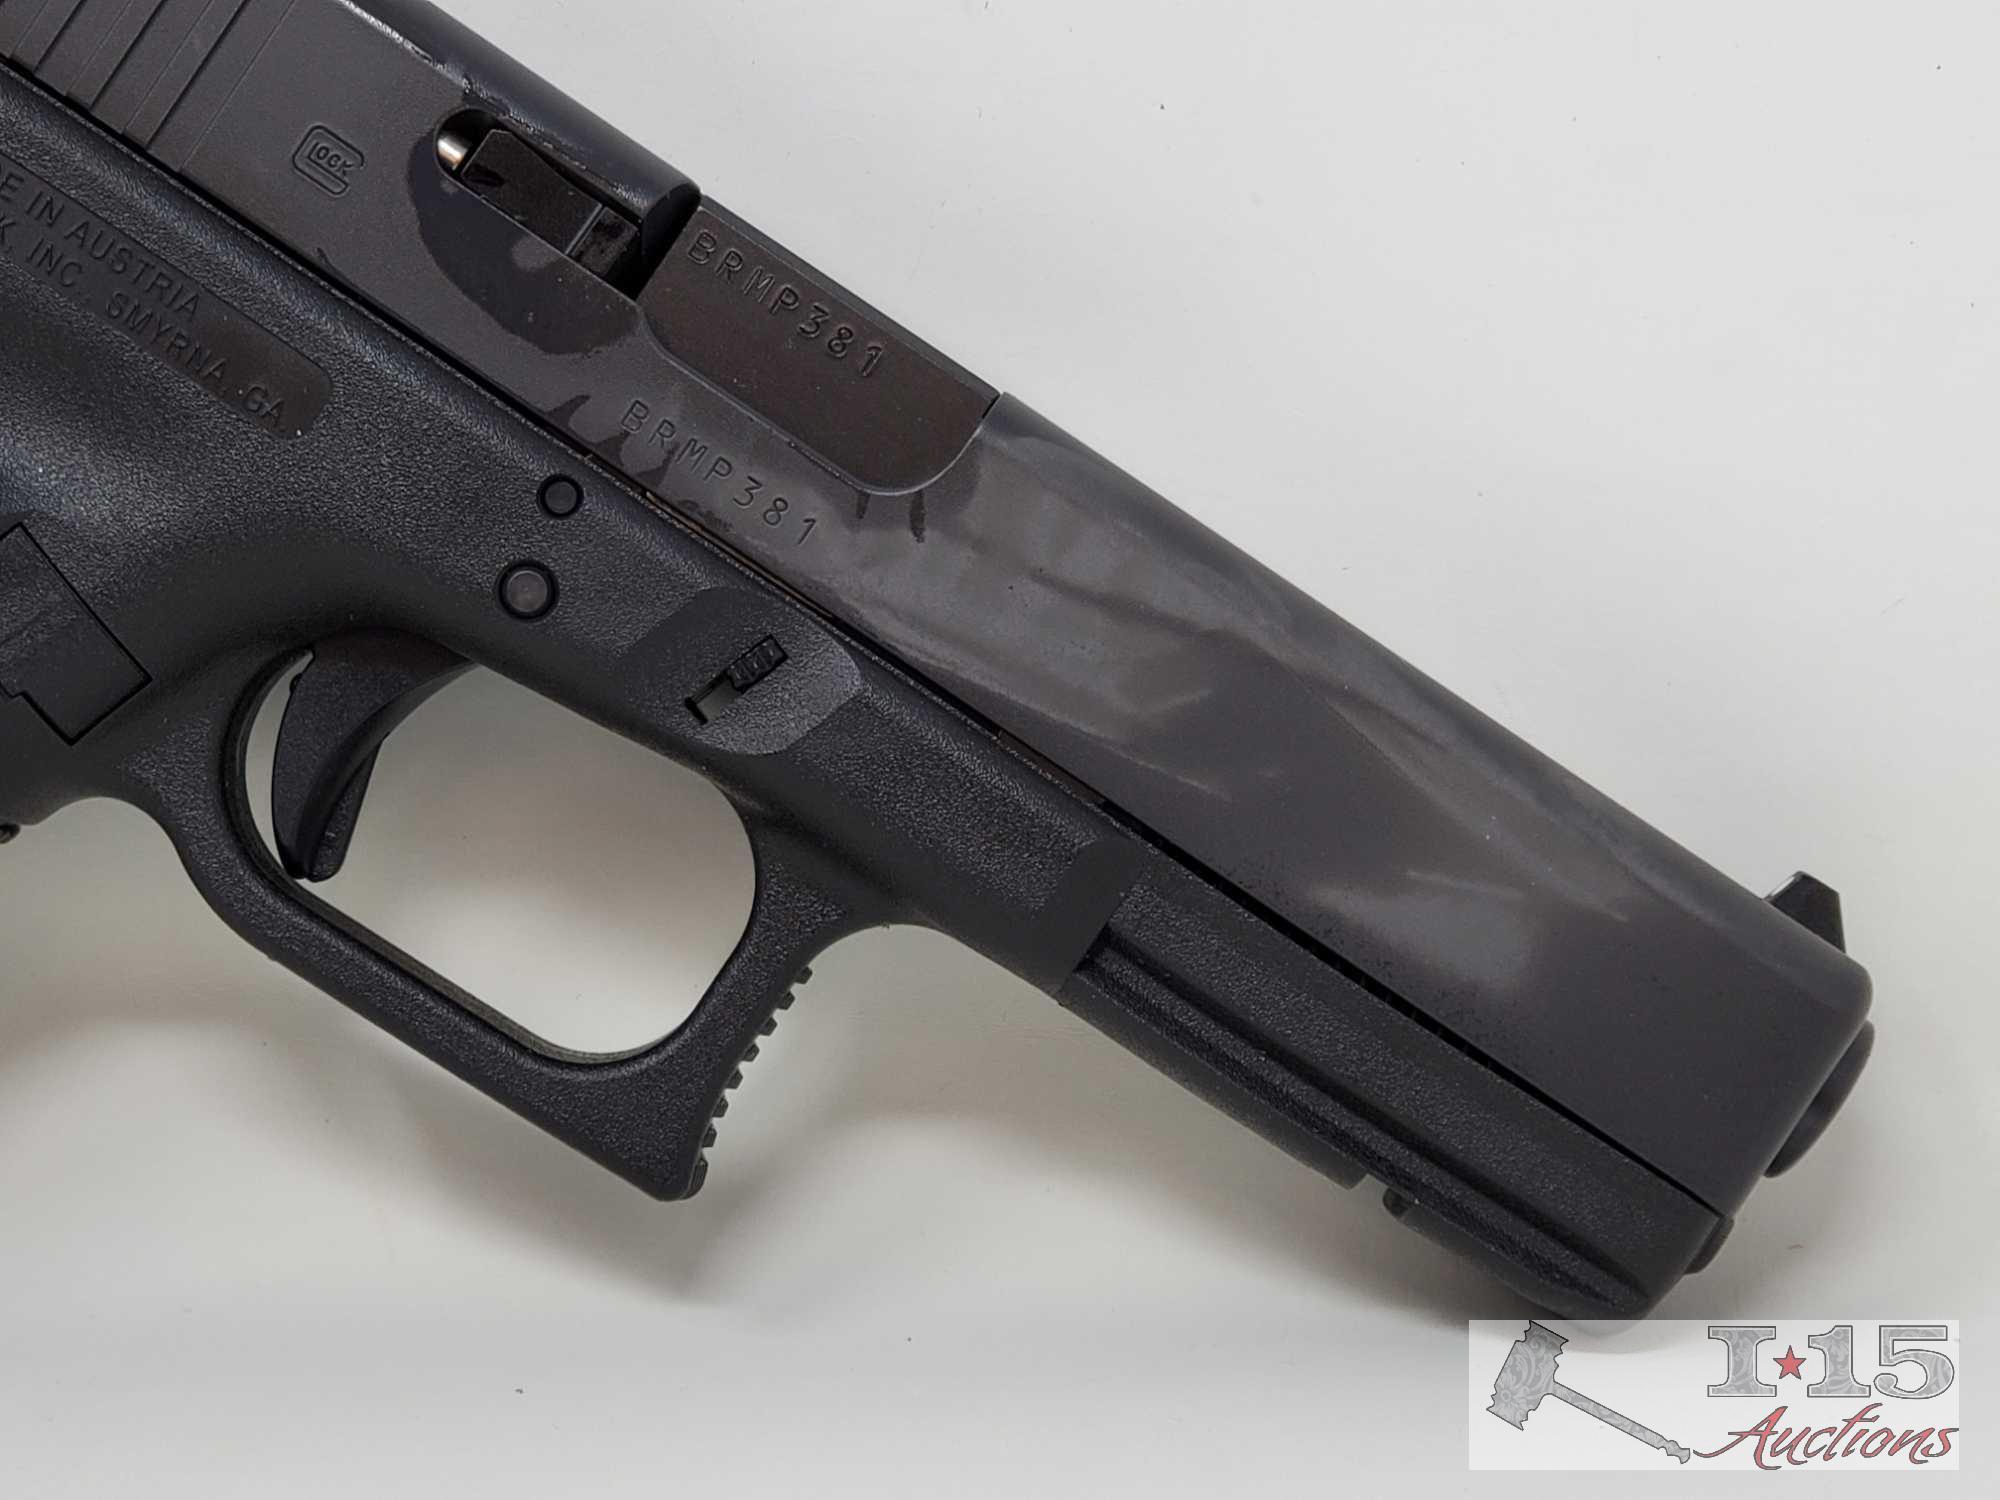 NEW Glock 17 9mm Semi-Auto Pistol